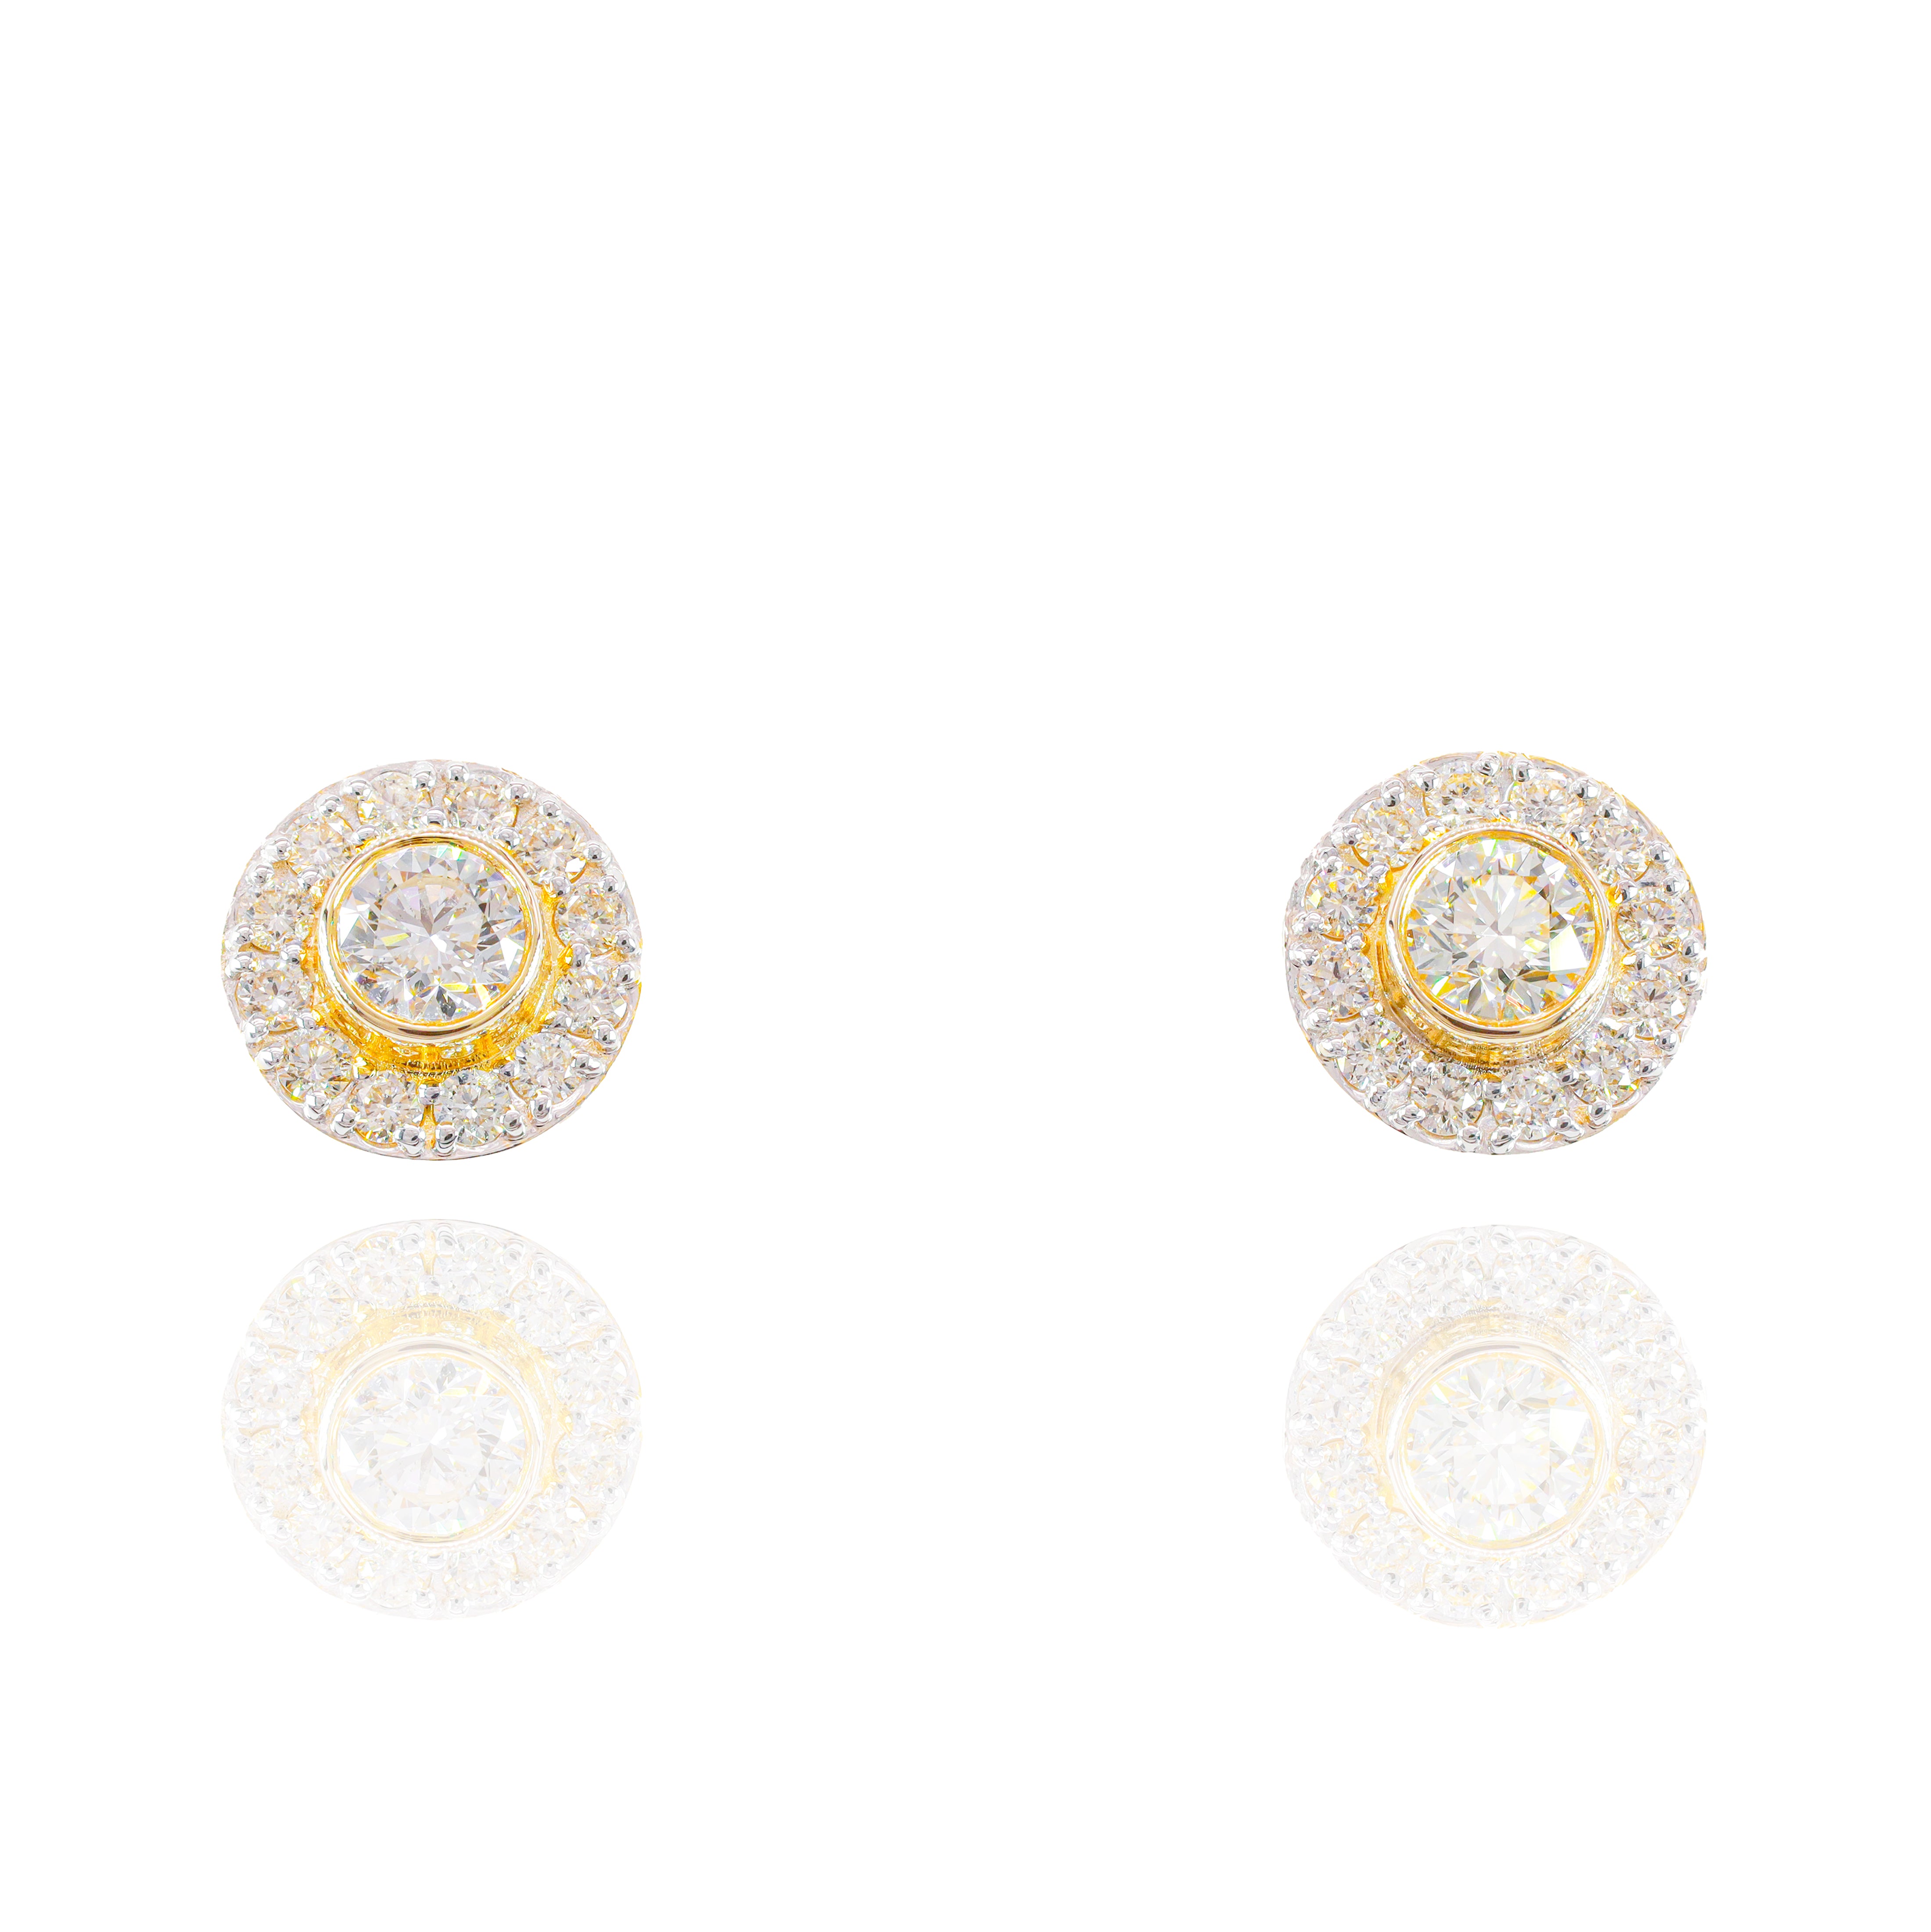 35 Pointer Center Diamond Earrings